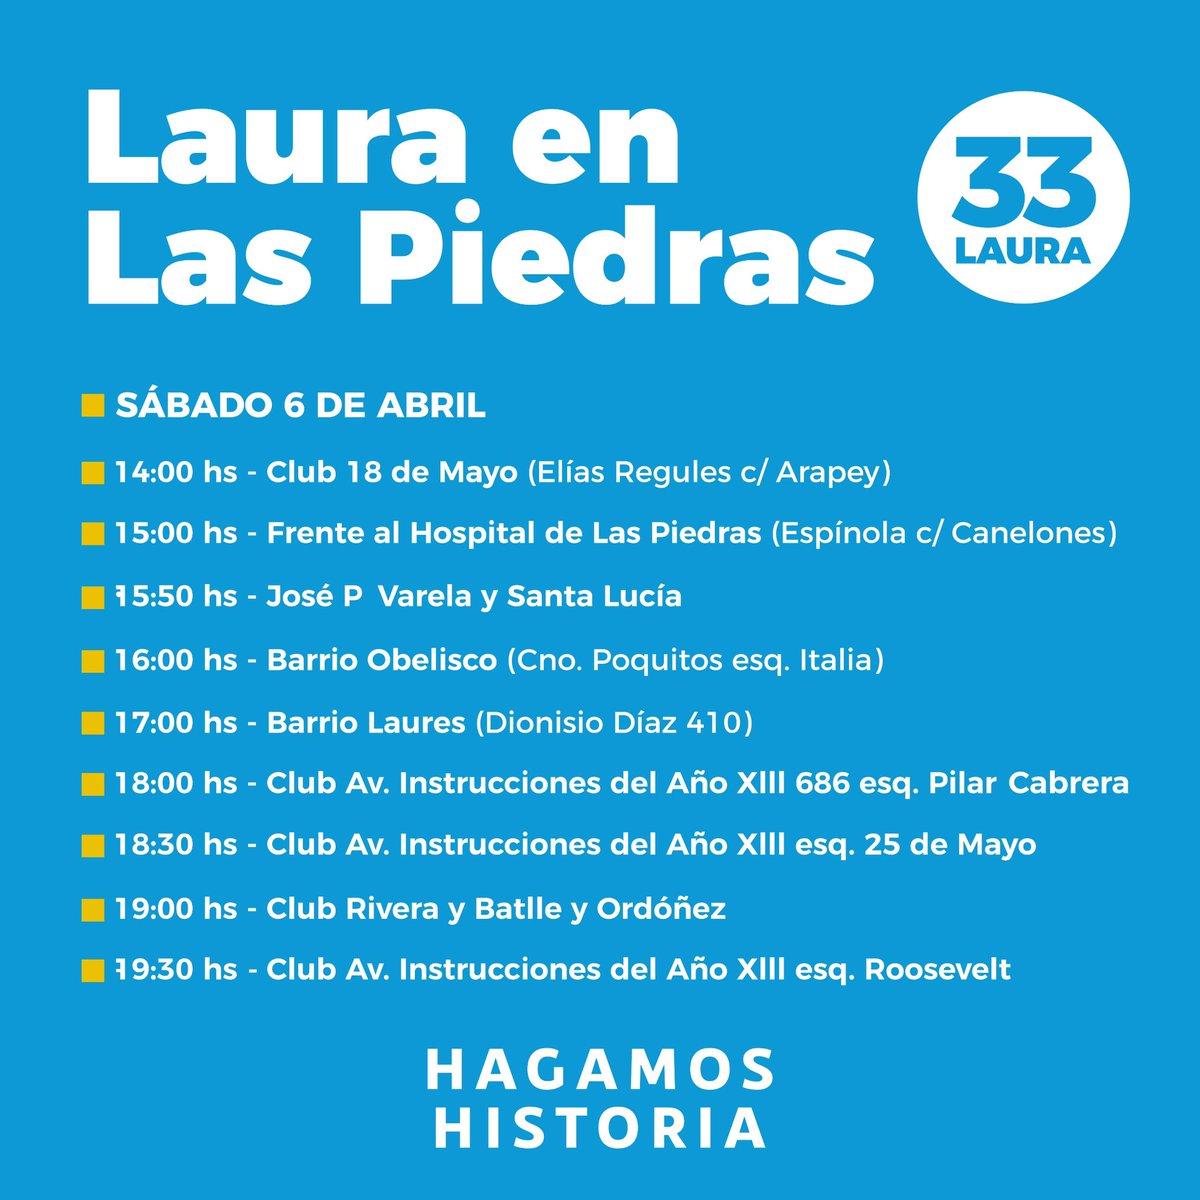 Sábado 6 recorrida con @Lauraraffo #HagamosHistoria #Lista33